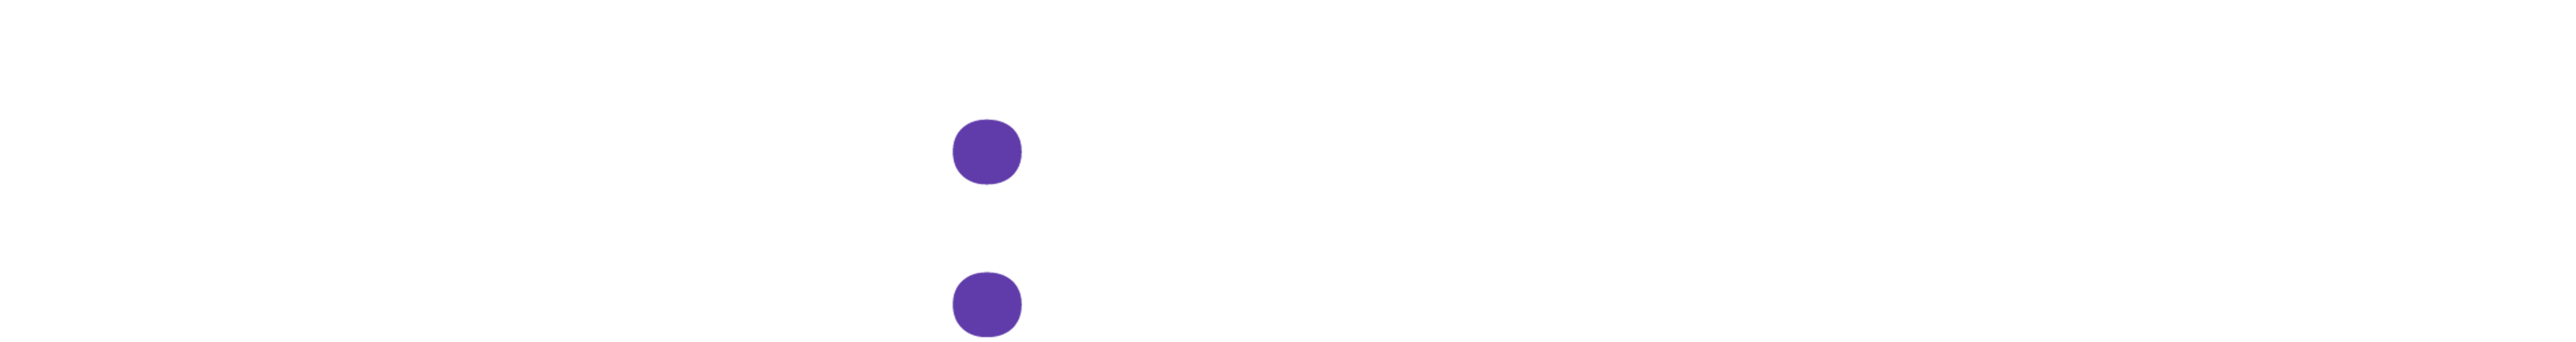 Alfa:search - Company logo